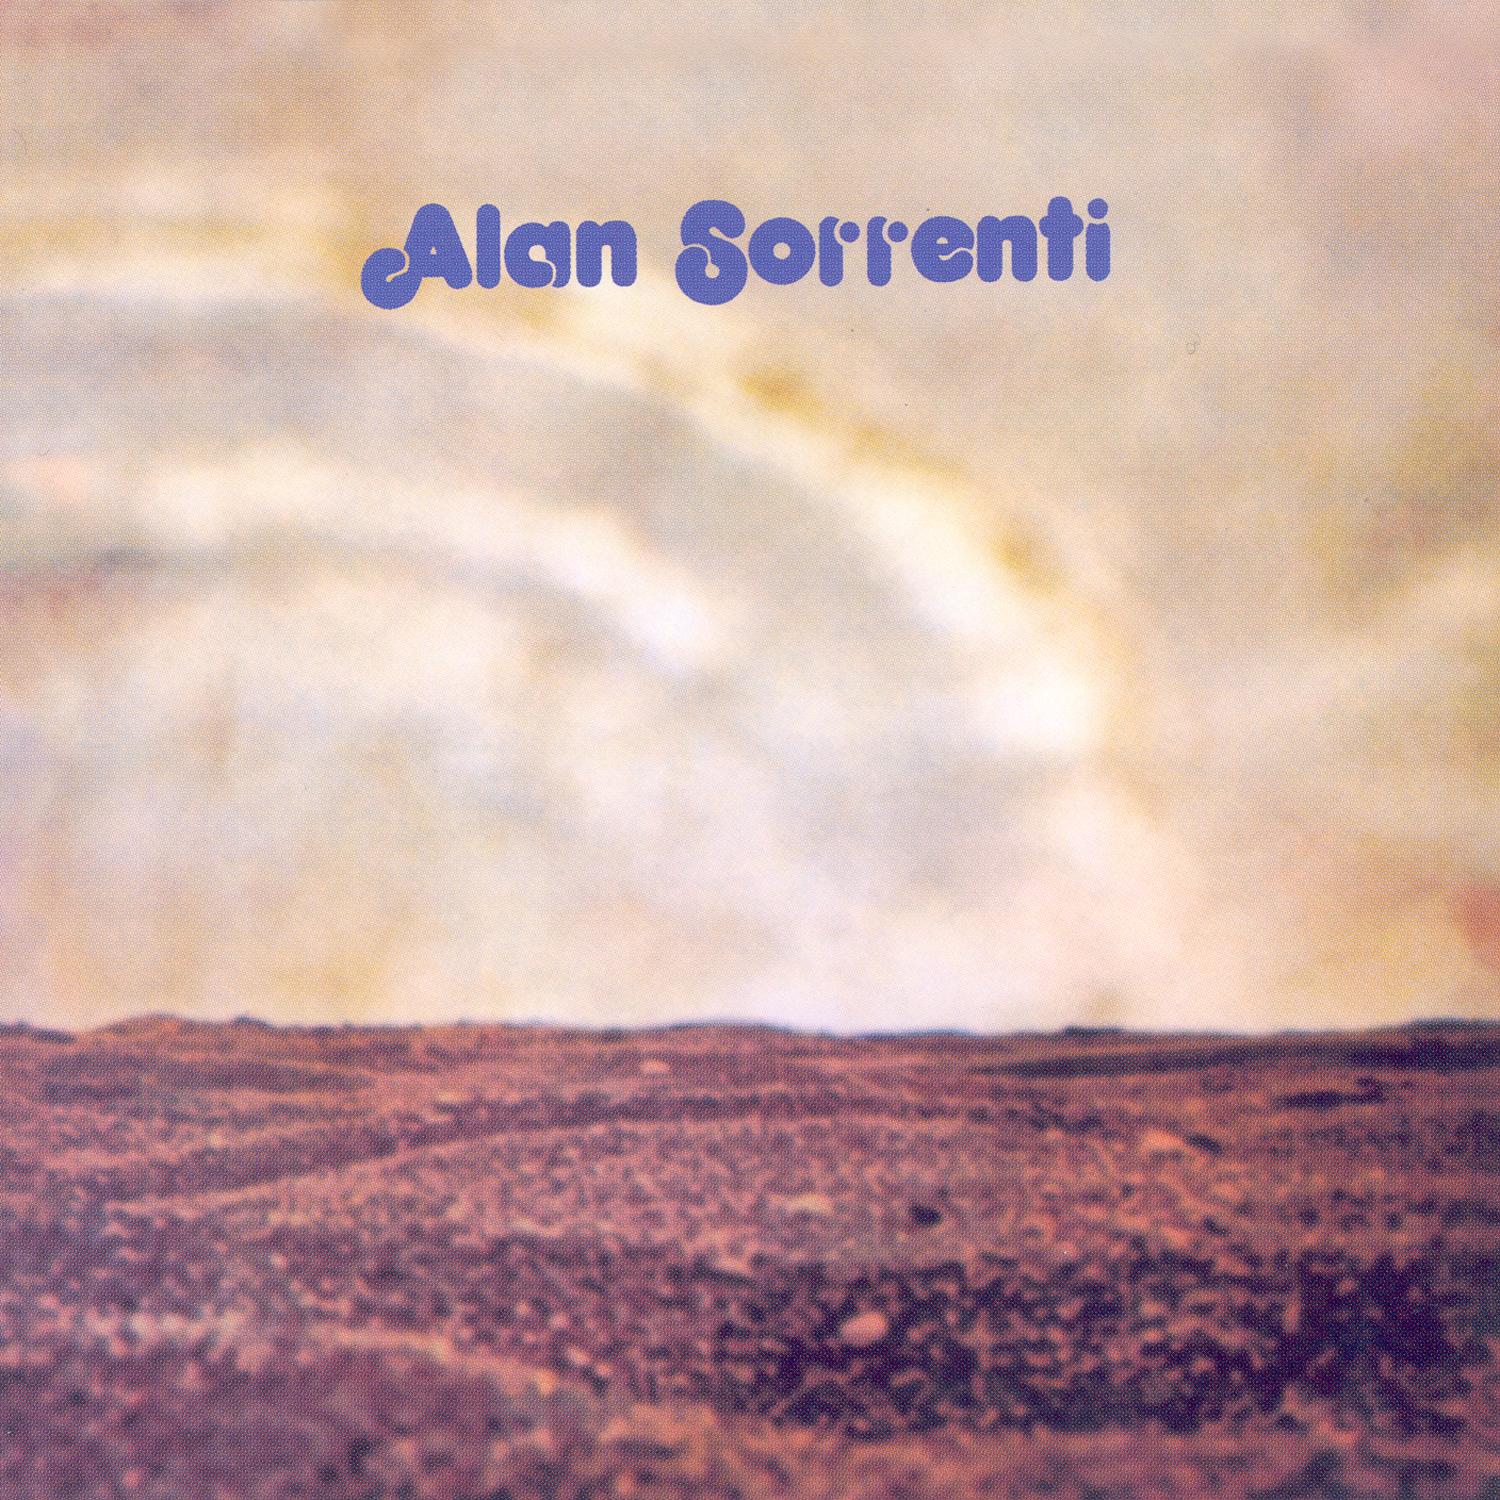 Alan Sorrenti - Come Un Vecchio Incensiere All'Alba Di Un Villaggio Deserto - 33RPM